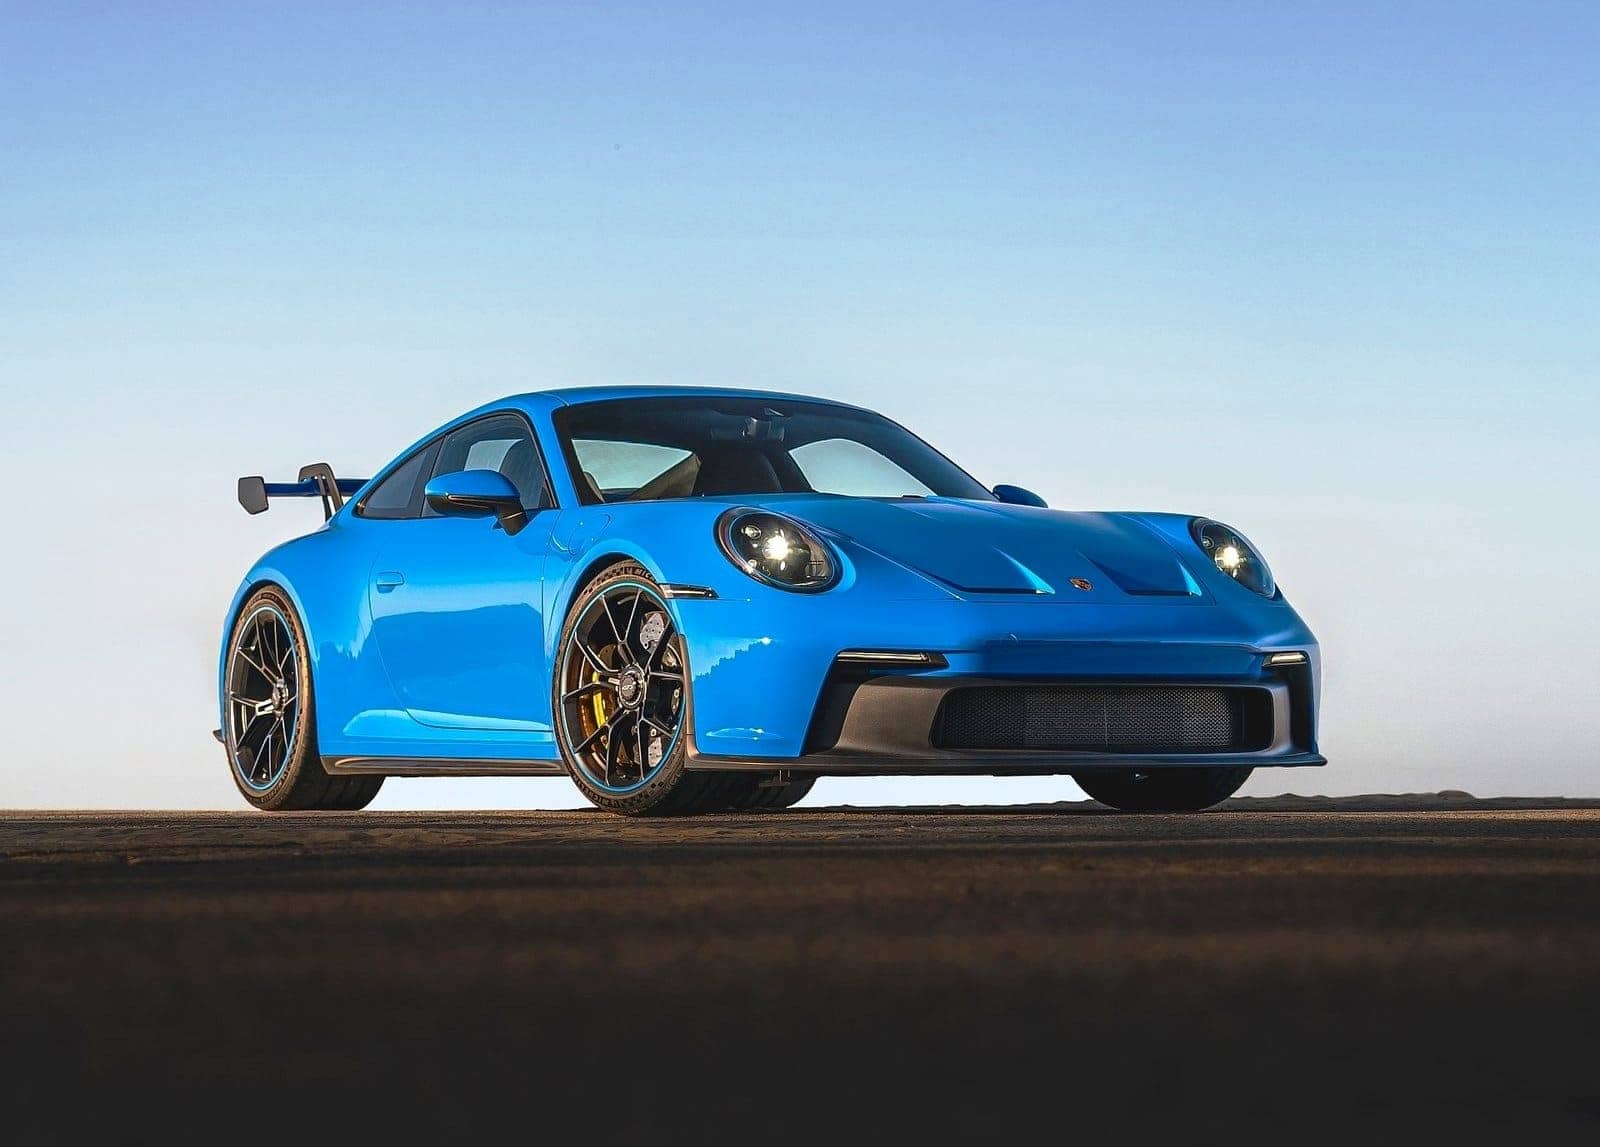 Carro Porsche 911 GT3 na cor azul com faróis ligados. Ao fundo o céu claro também azulado combinando com as cores do carro.